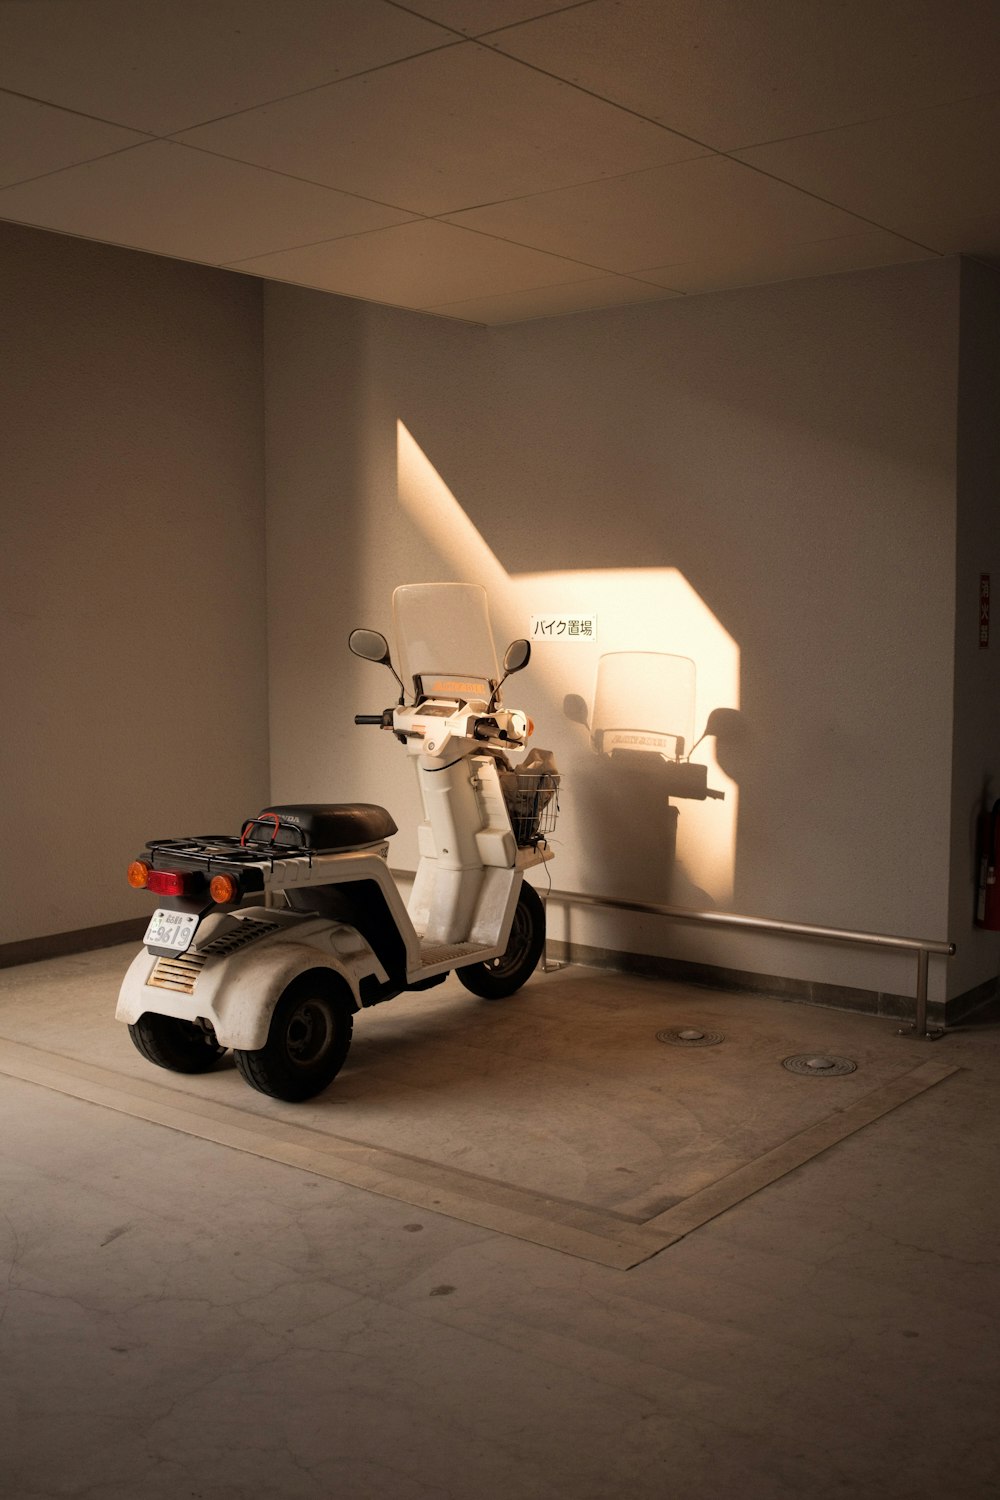 scooter blanco y negro estacionado junto a la pared blanca